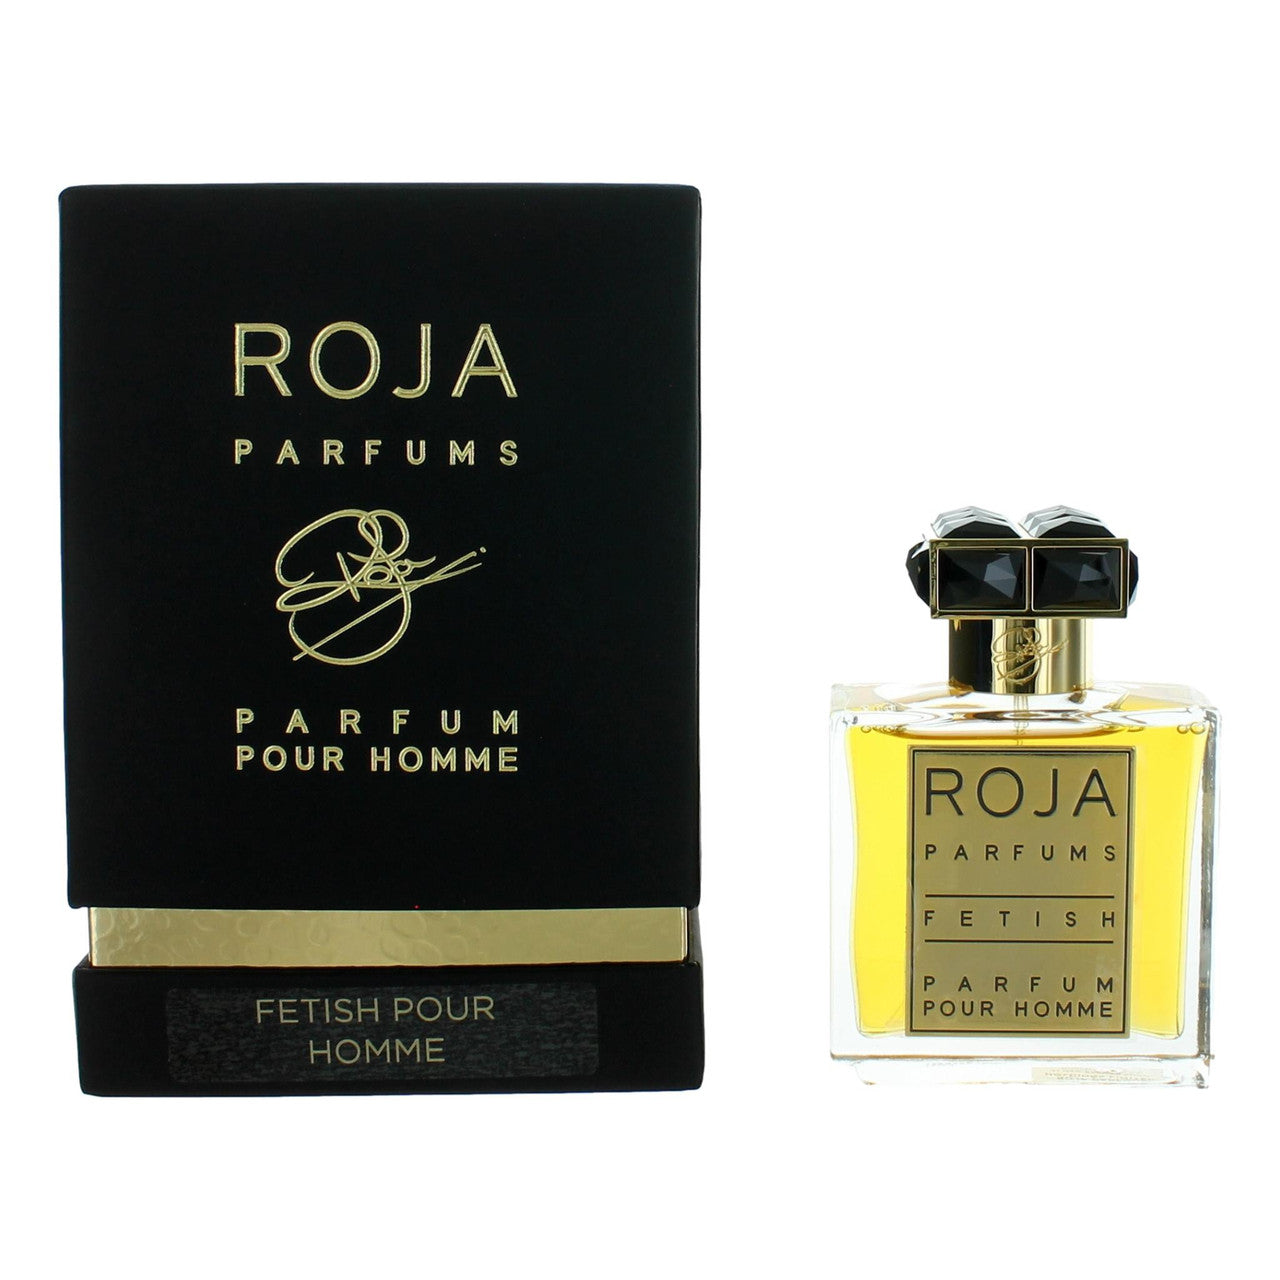 Fetish Pour Homme by Roja Parfums, 1.7 oz Parfum Spray for Men